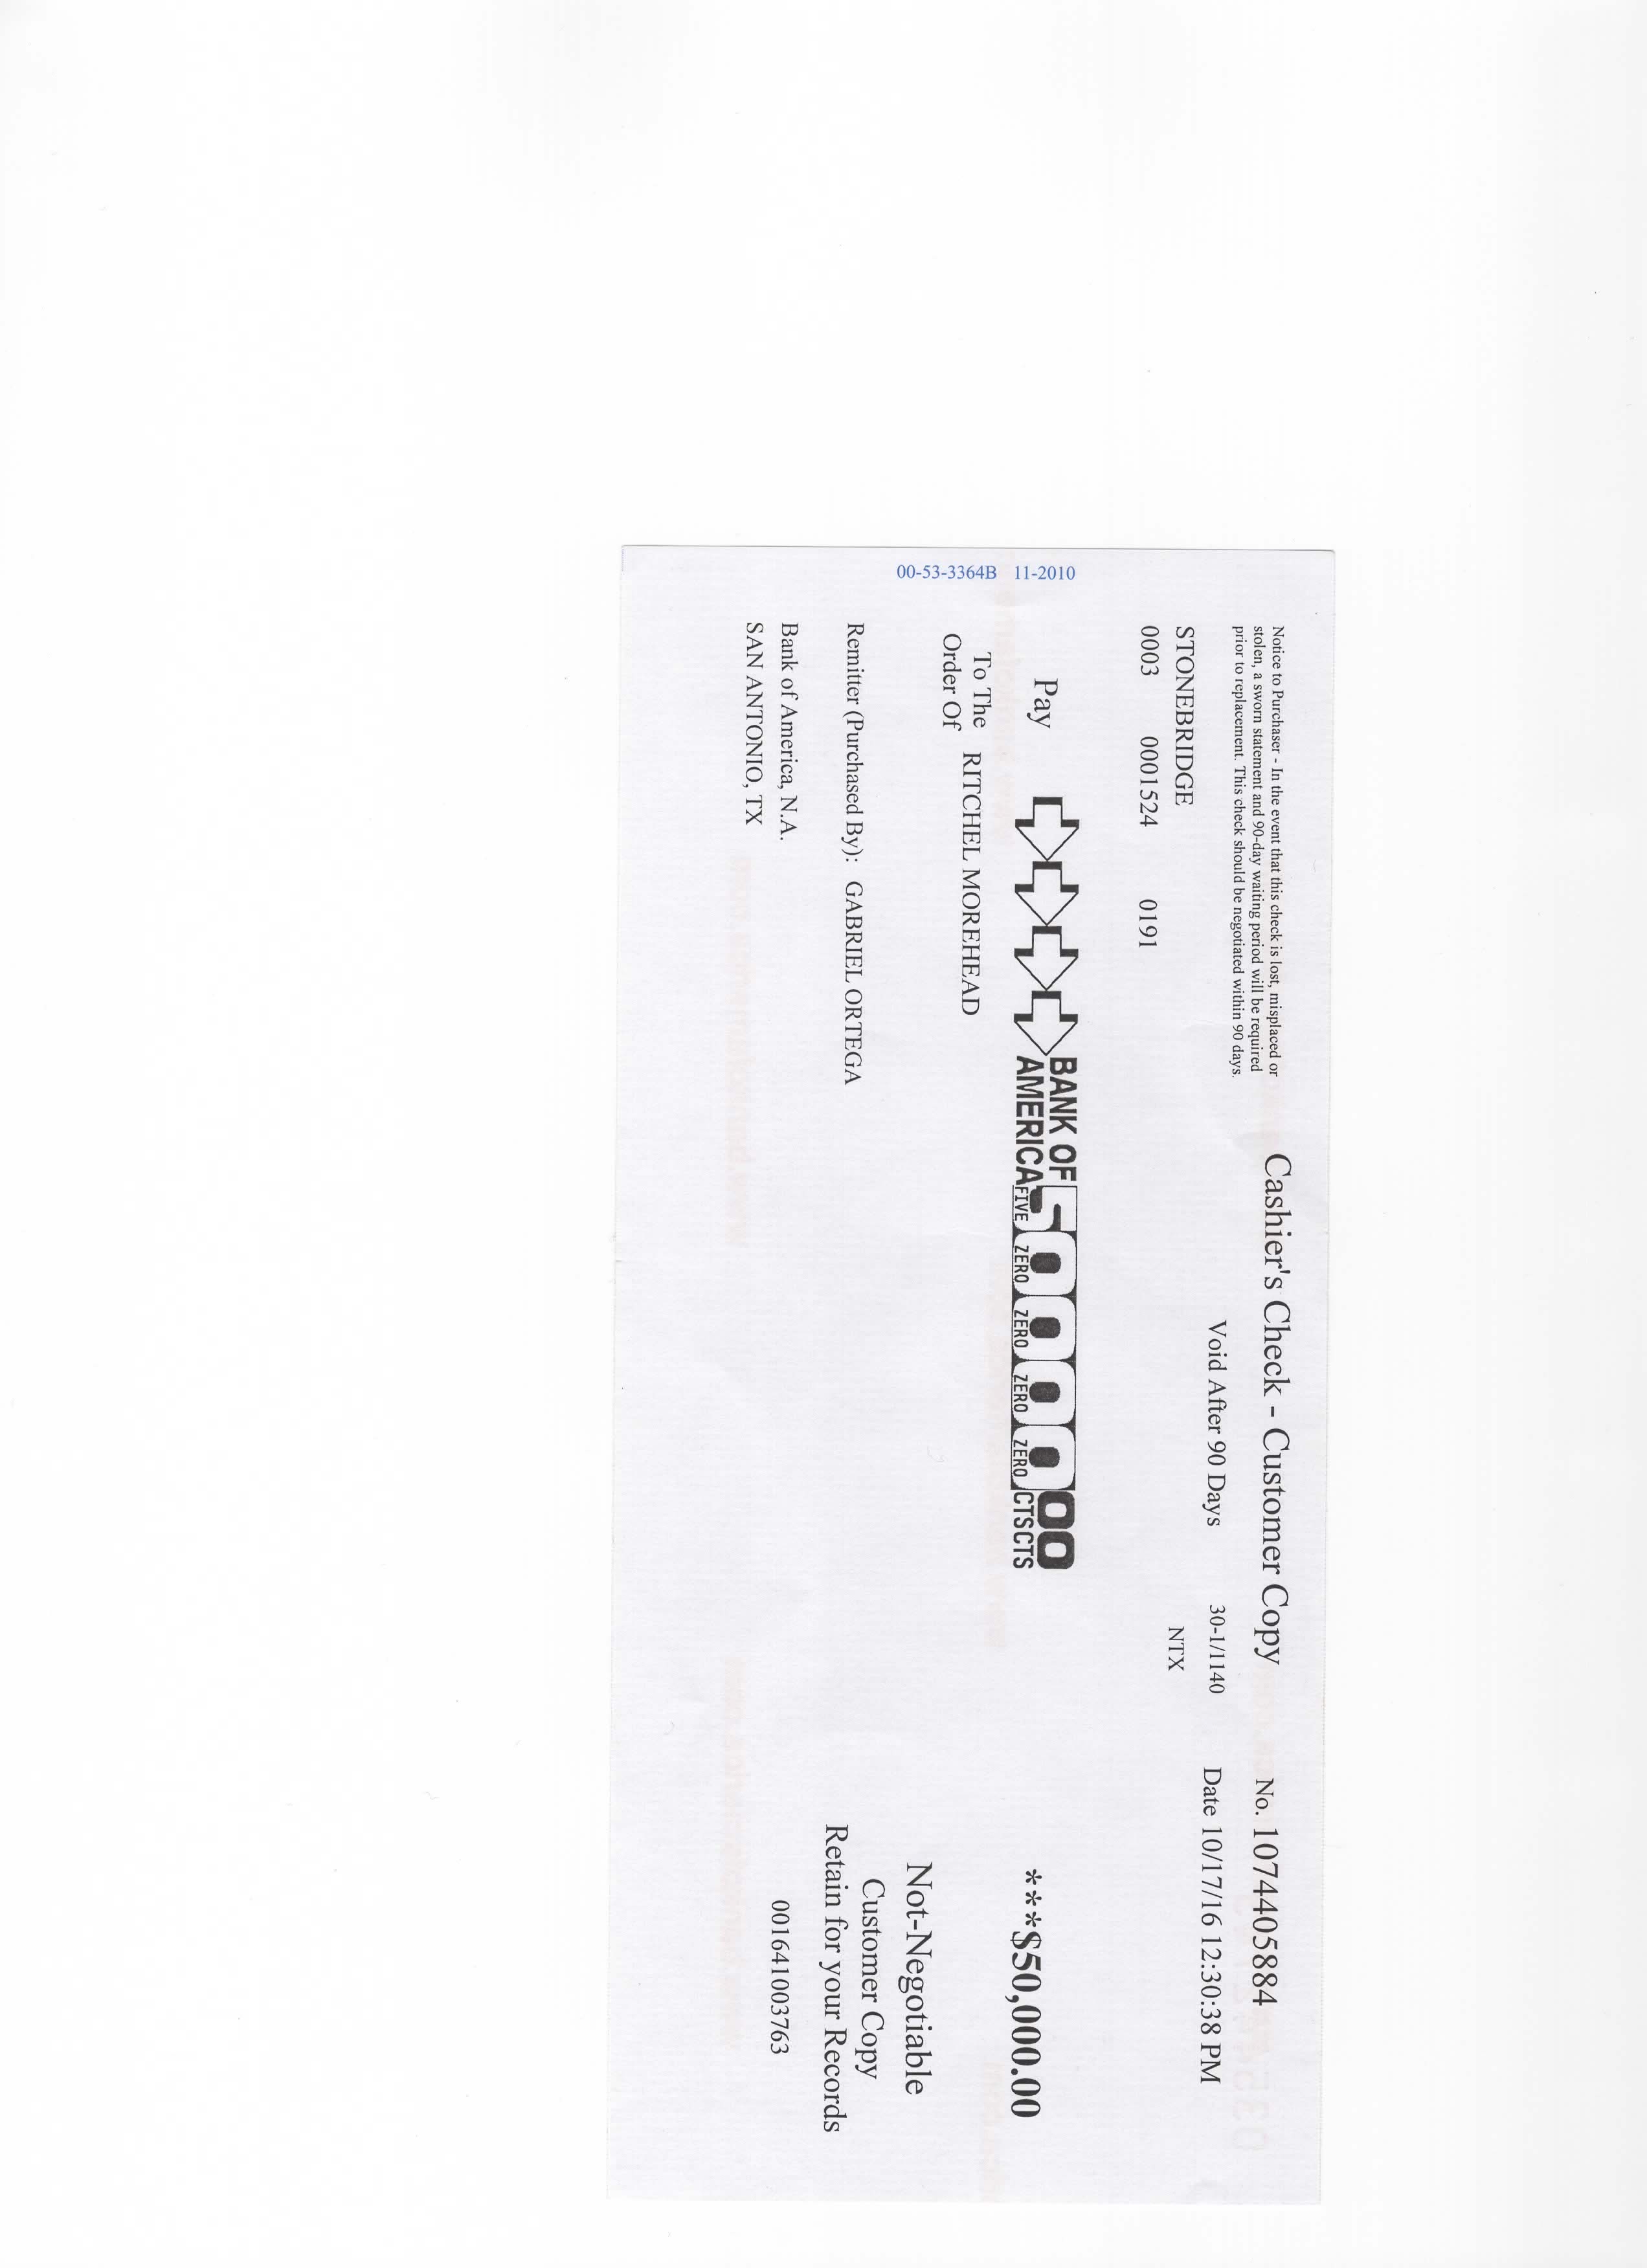 Carbon copy of original cashier's check